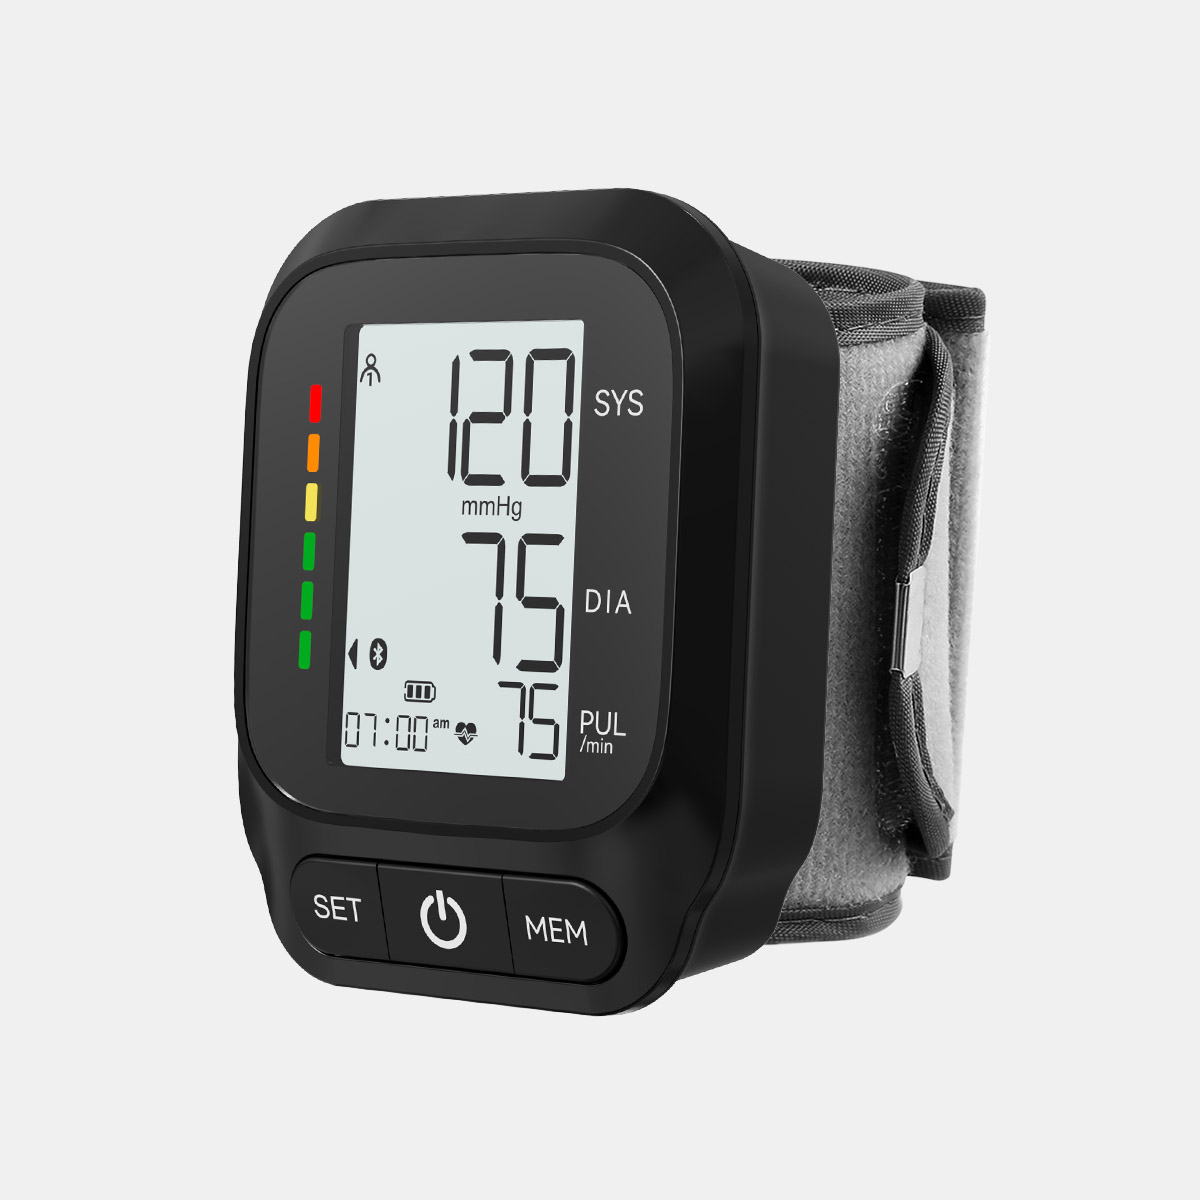 Tlhokomelo ea Bophelo Home Sebelisa Digital Wrist Tensiometer MDR CE Manufacturer